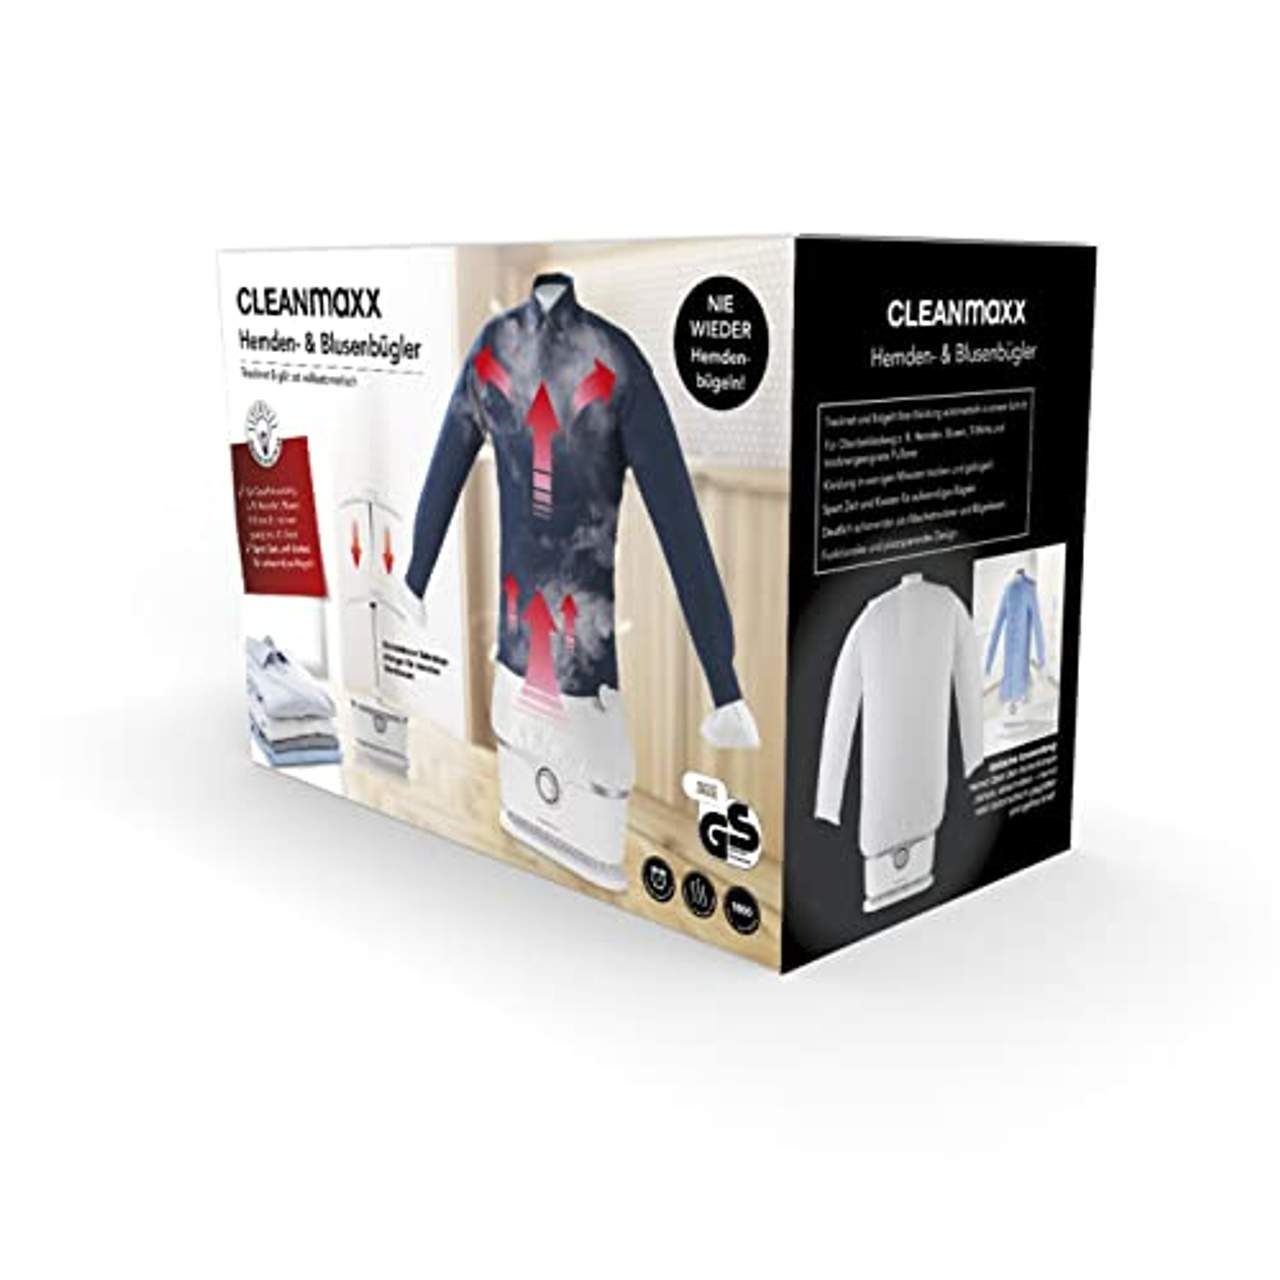 CLEANmaxx Automatischer Hemdenbügler Trocknet und glättet Hemden & Blusen und ersetzt Bügeleisen oder